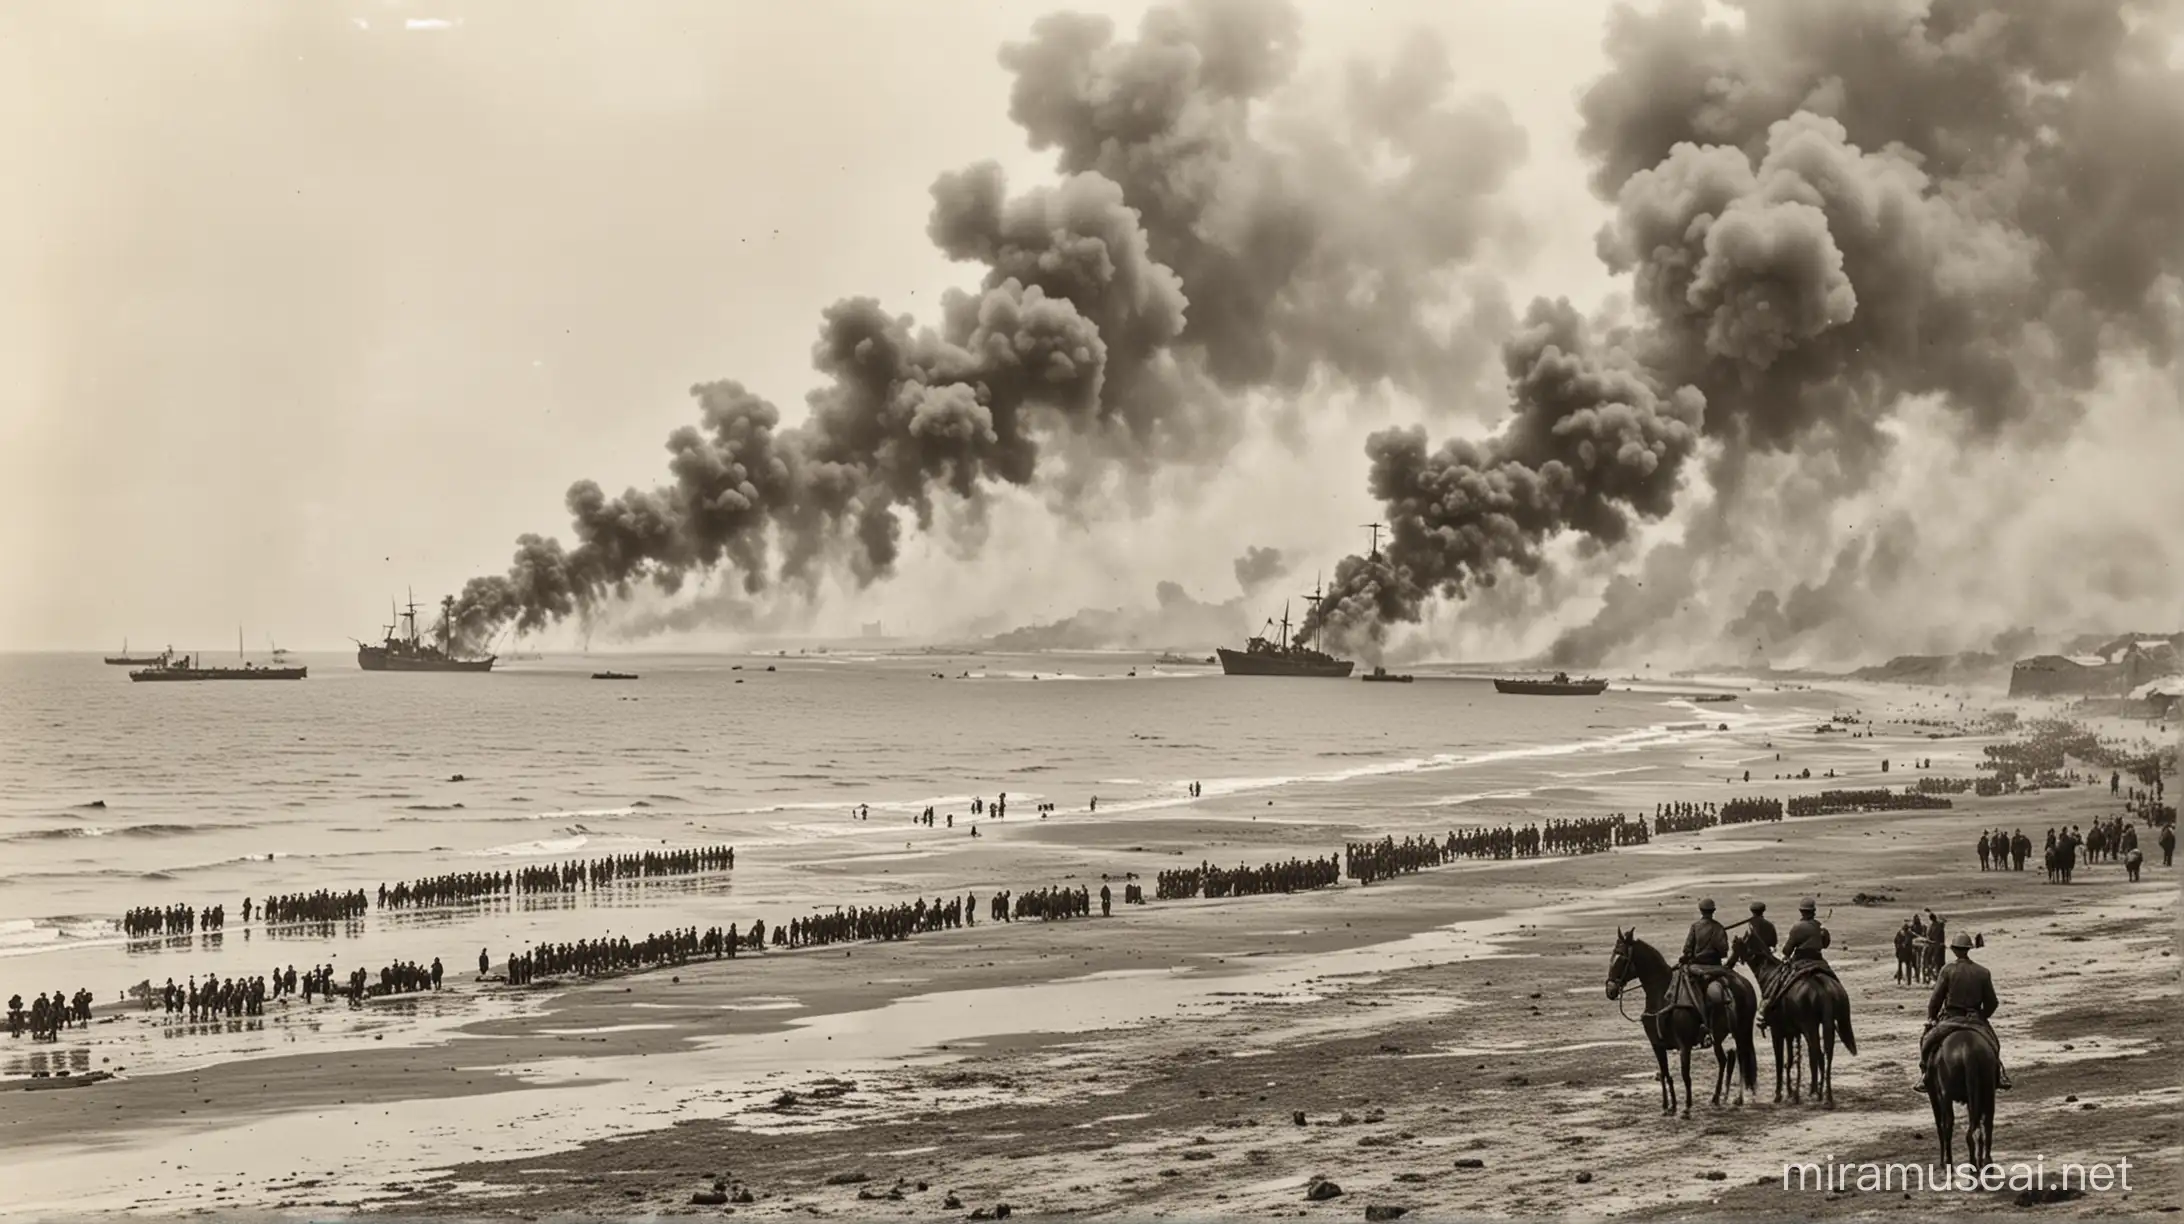 Praia com milhares de militares Romenos atirando, muita fumaça e explosão de artilharia, ao fundo a praia com alguns navios e militares a cavalo. Fotografia de 1912